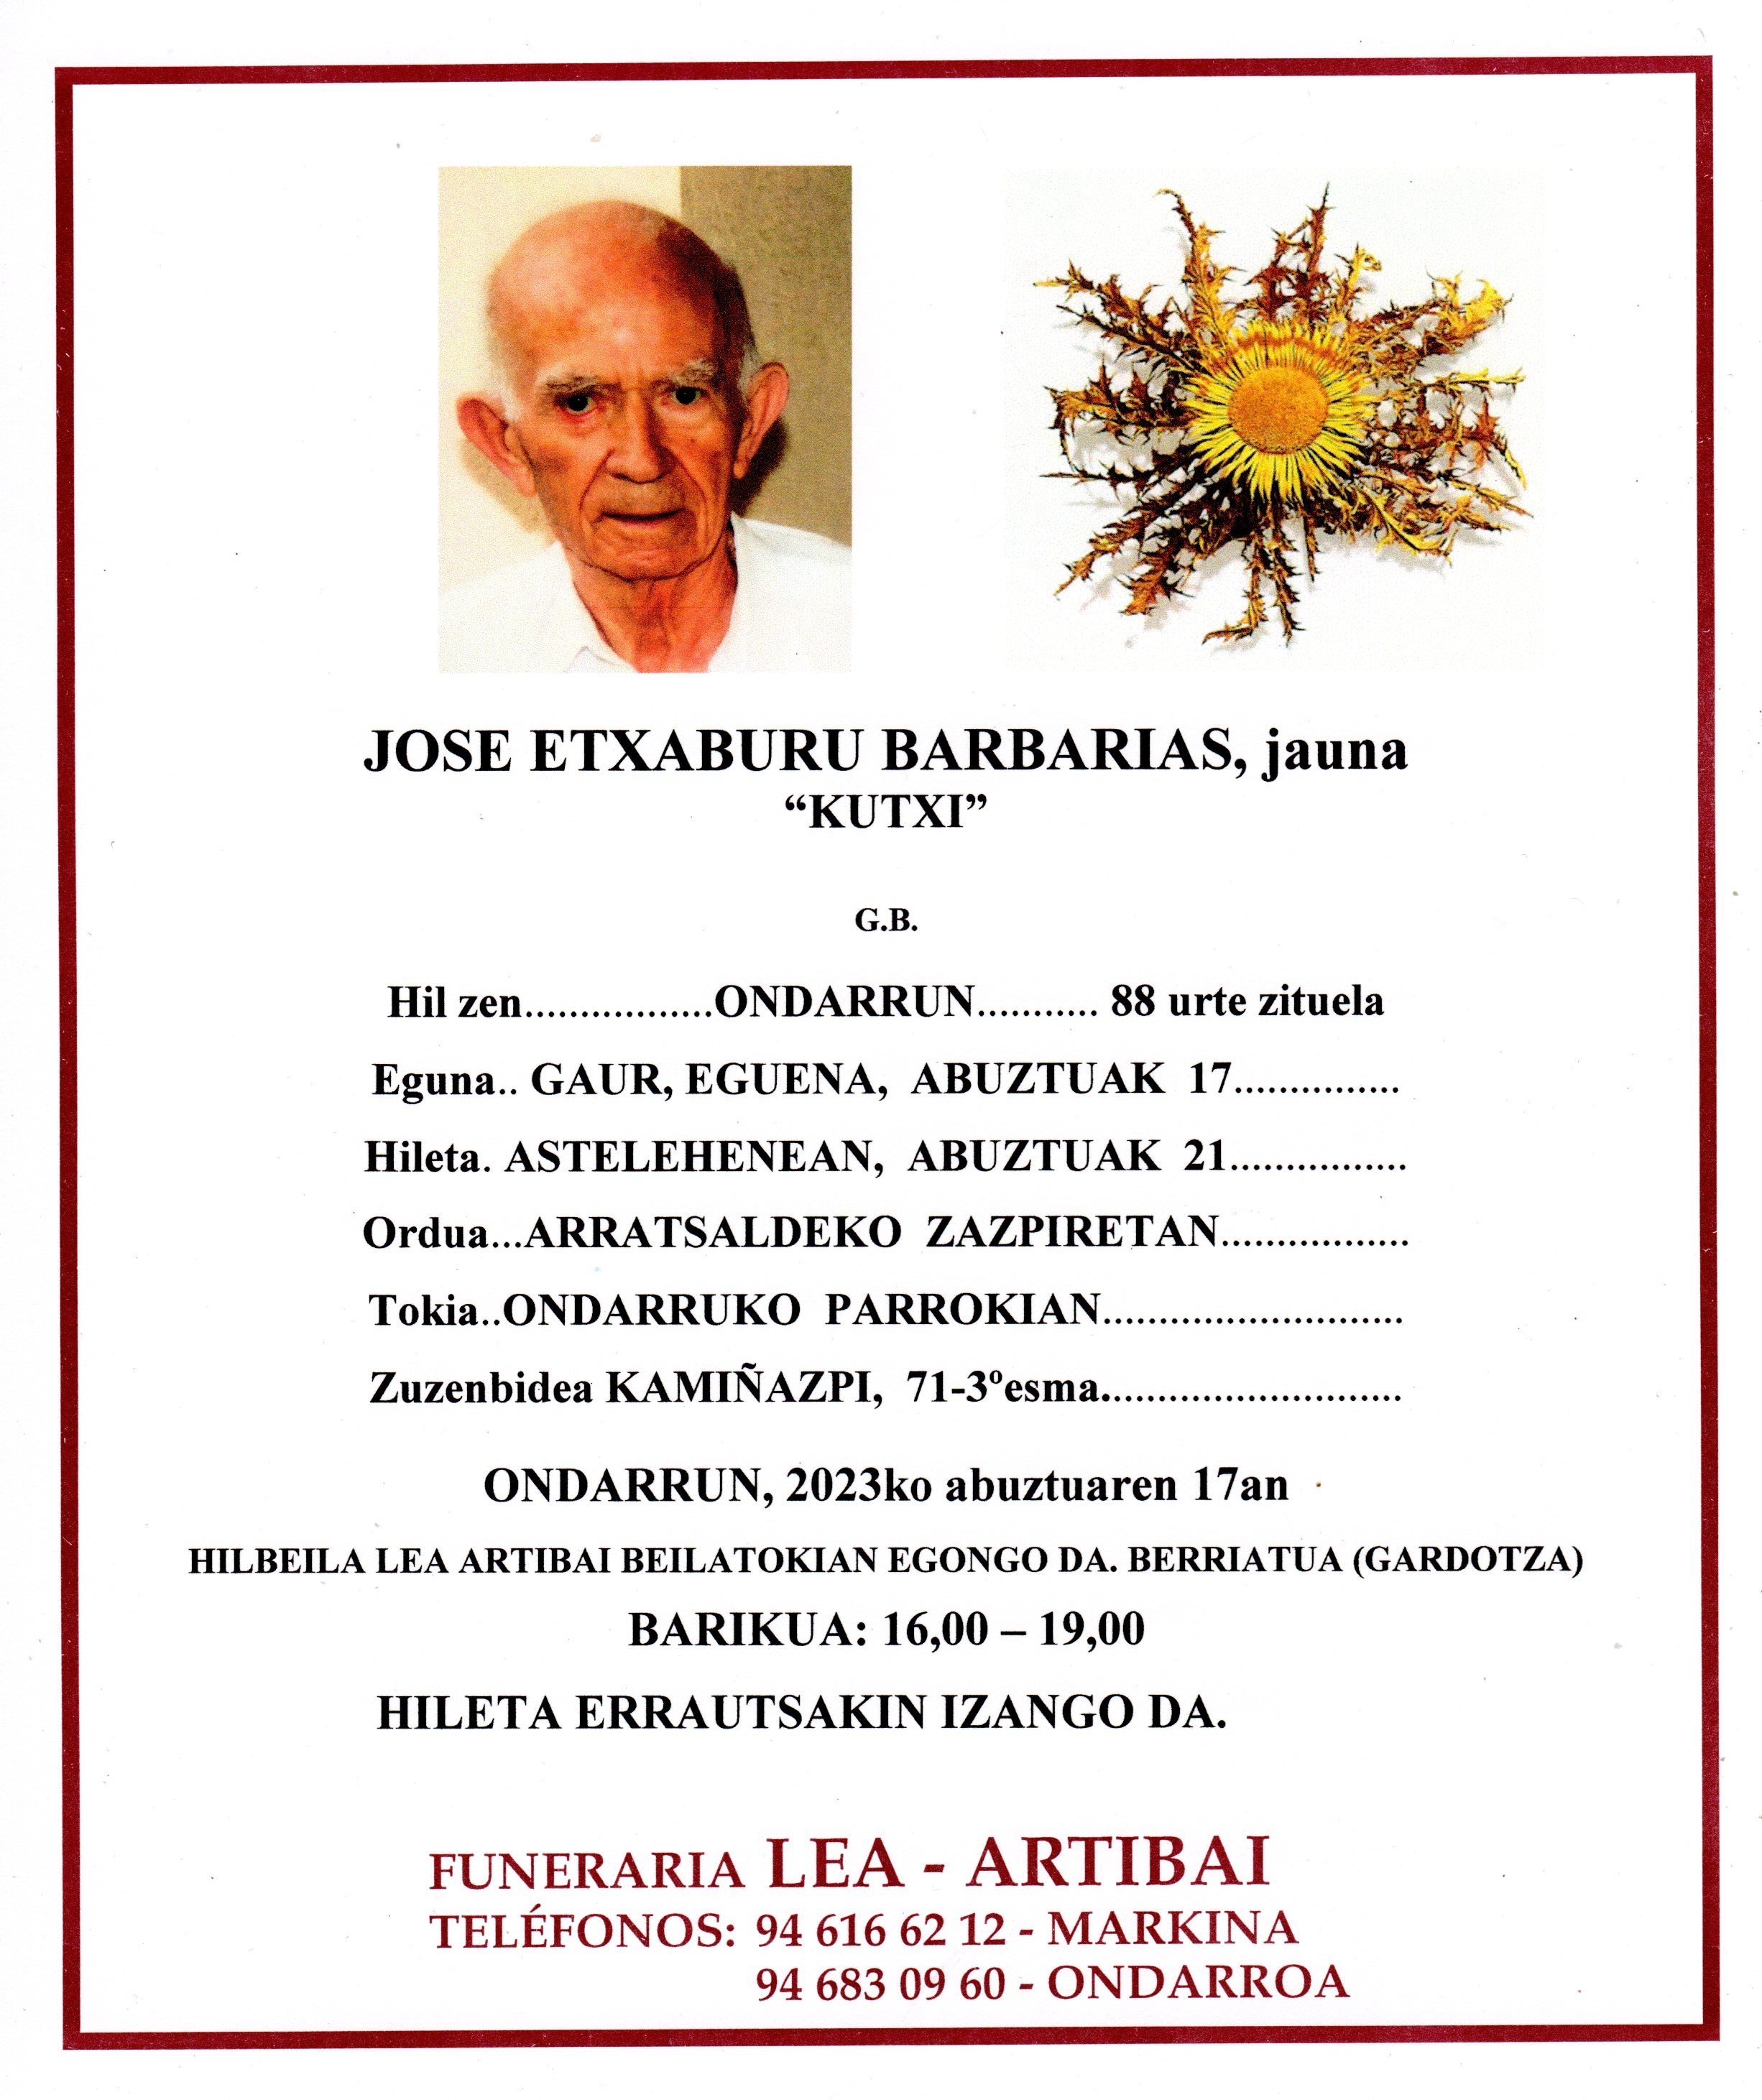 Jose Etxaburu Barbarias